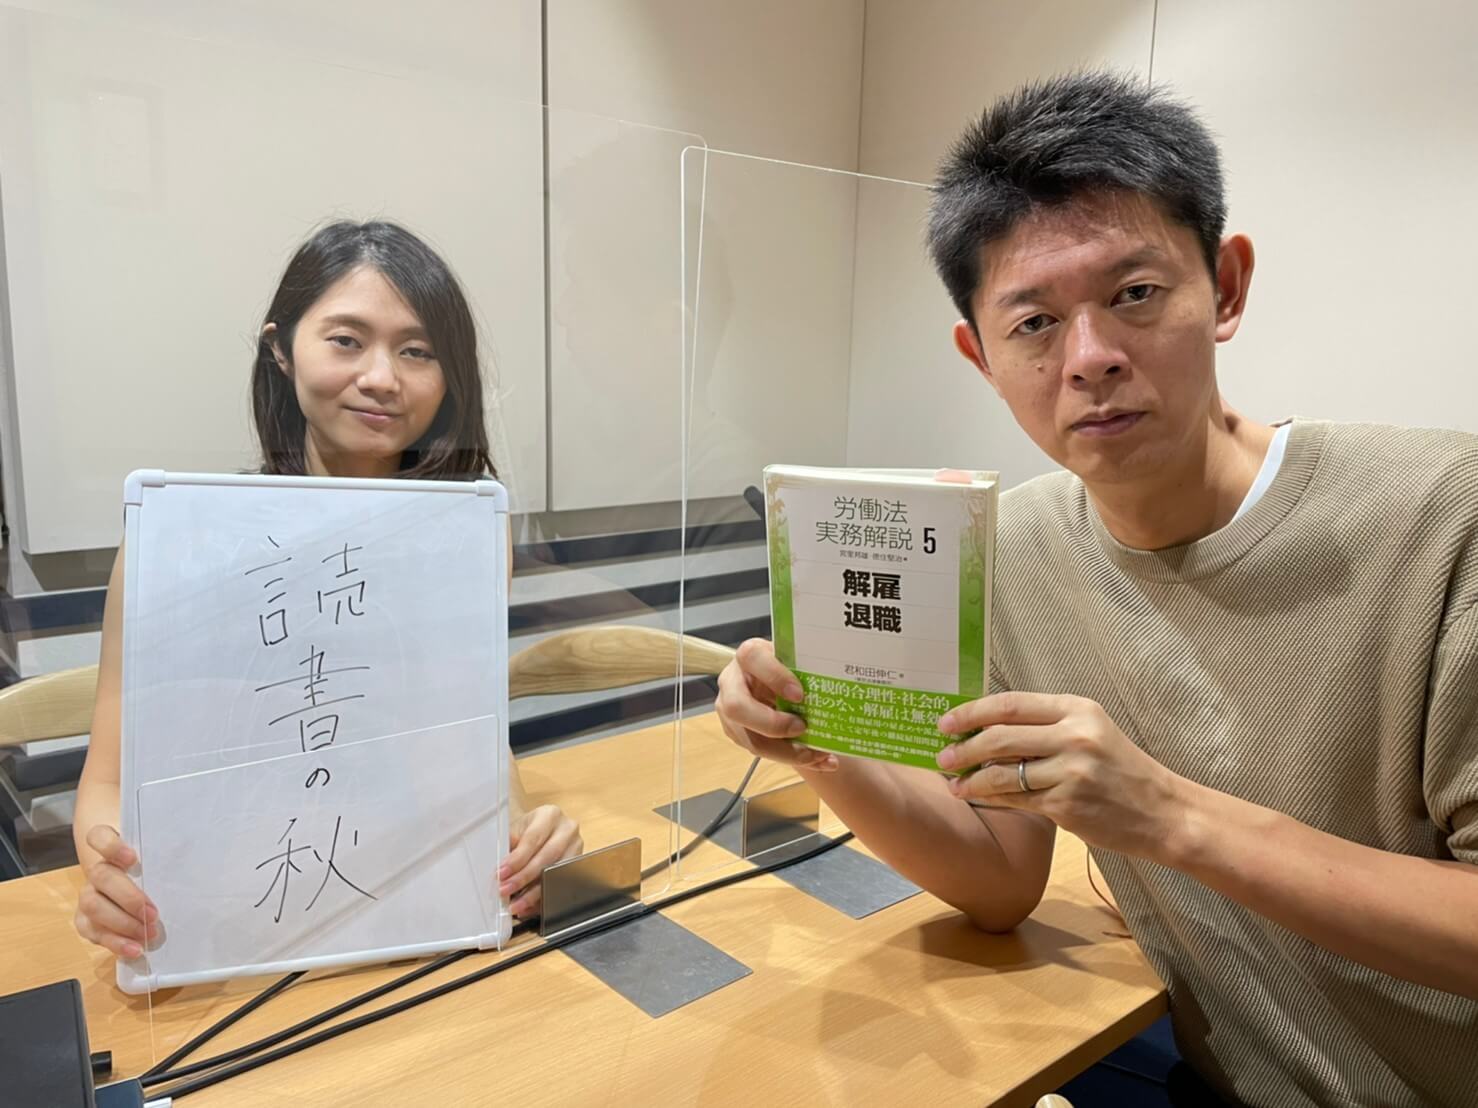 読書の秋と書かれたボードを持った古藤由佳弁護士と労働法解説書を持った島田秀平さん